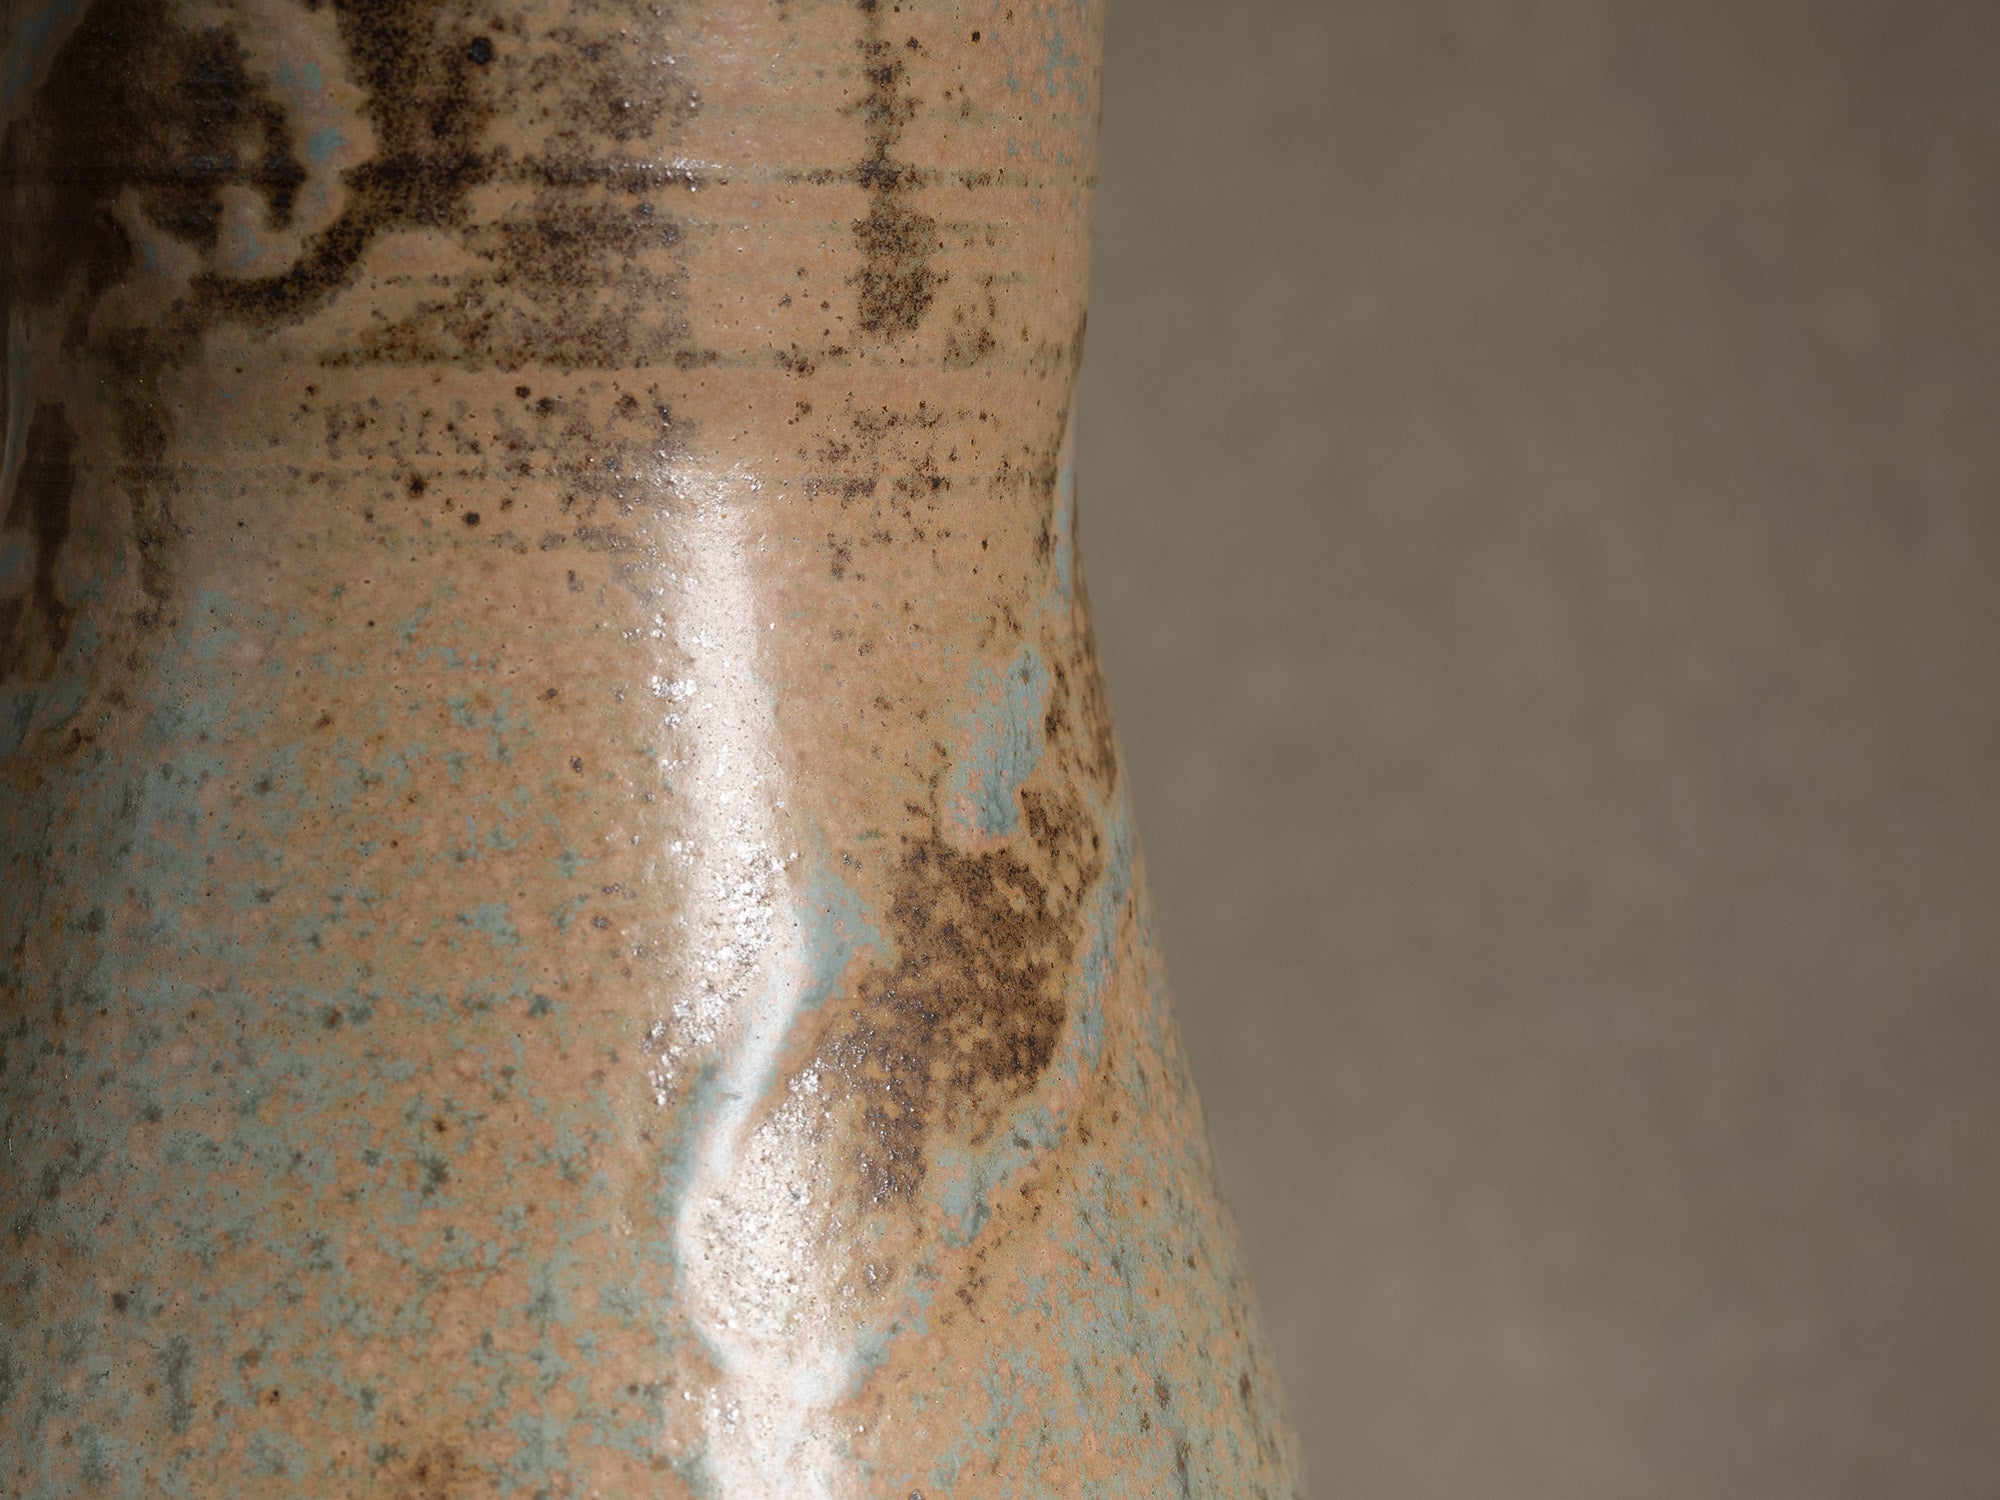 Vase Tokkuri en grès de Pierre Pigaglio, France (vers 1950)..Oustanding japonisme tokkuri stoneware vase by Pierre Pigaglio in Saint&#x2011;Amand&#x2011;en&#x2011;Puisaye, France (circa 1950)